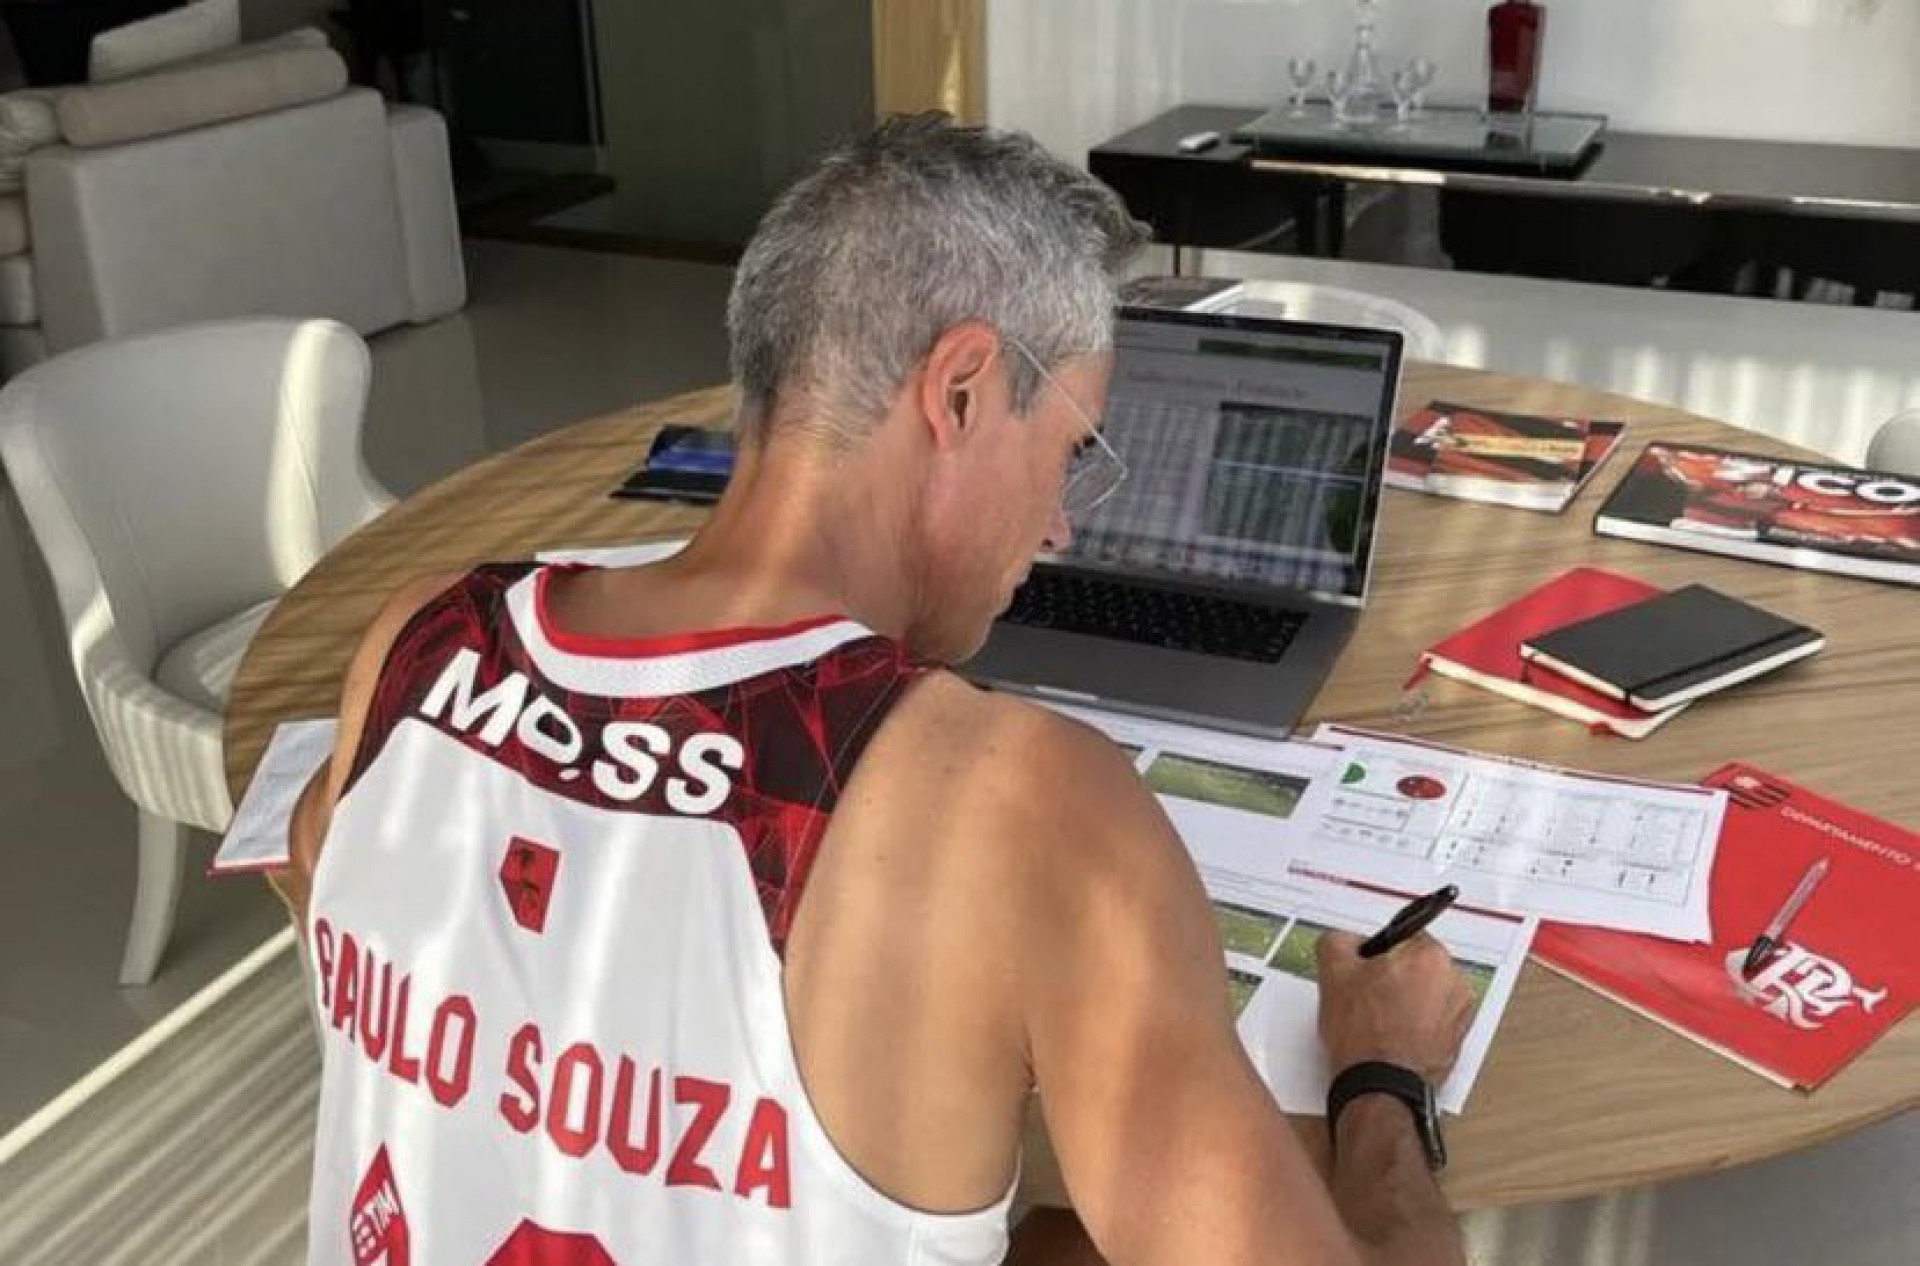 Camisa do técnico Paulo Sousa com erro de ortografia - Reprodução/Instagram